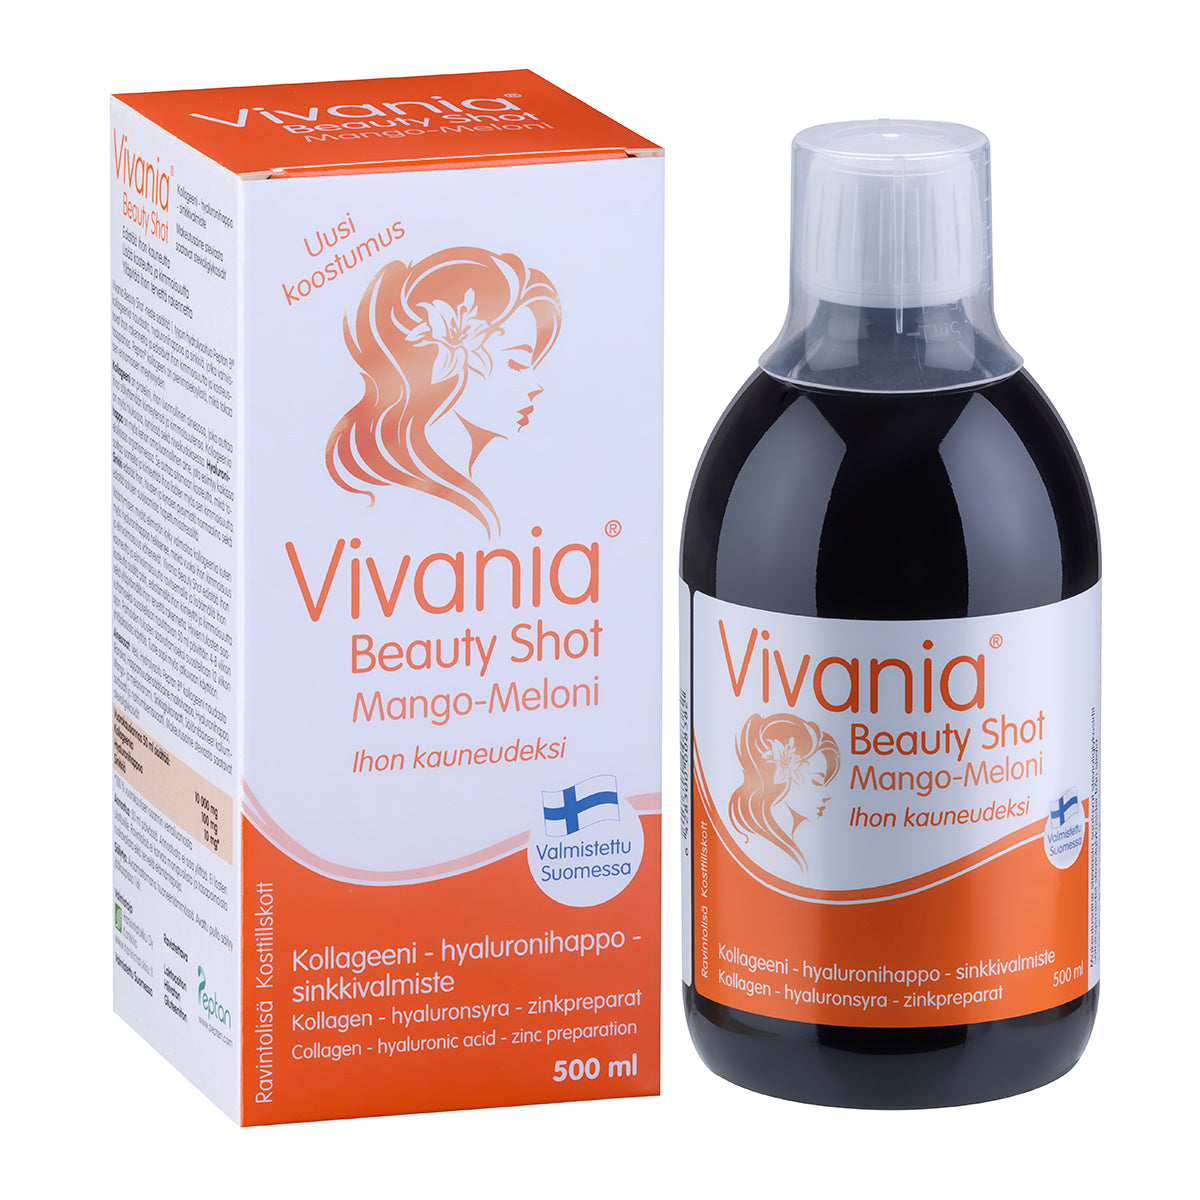 Vivania Beauty Shot Mango-Meloni 500 ml